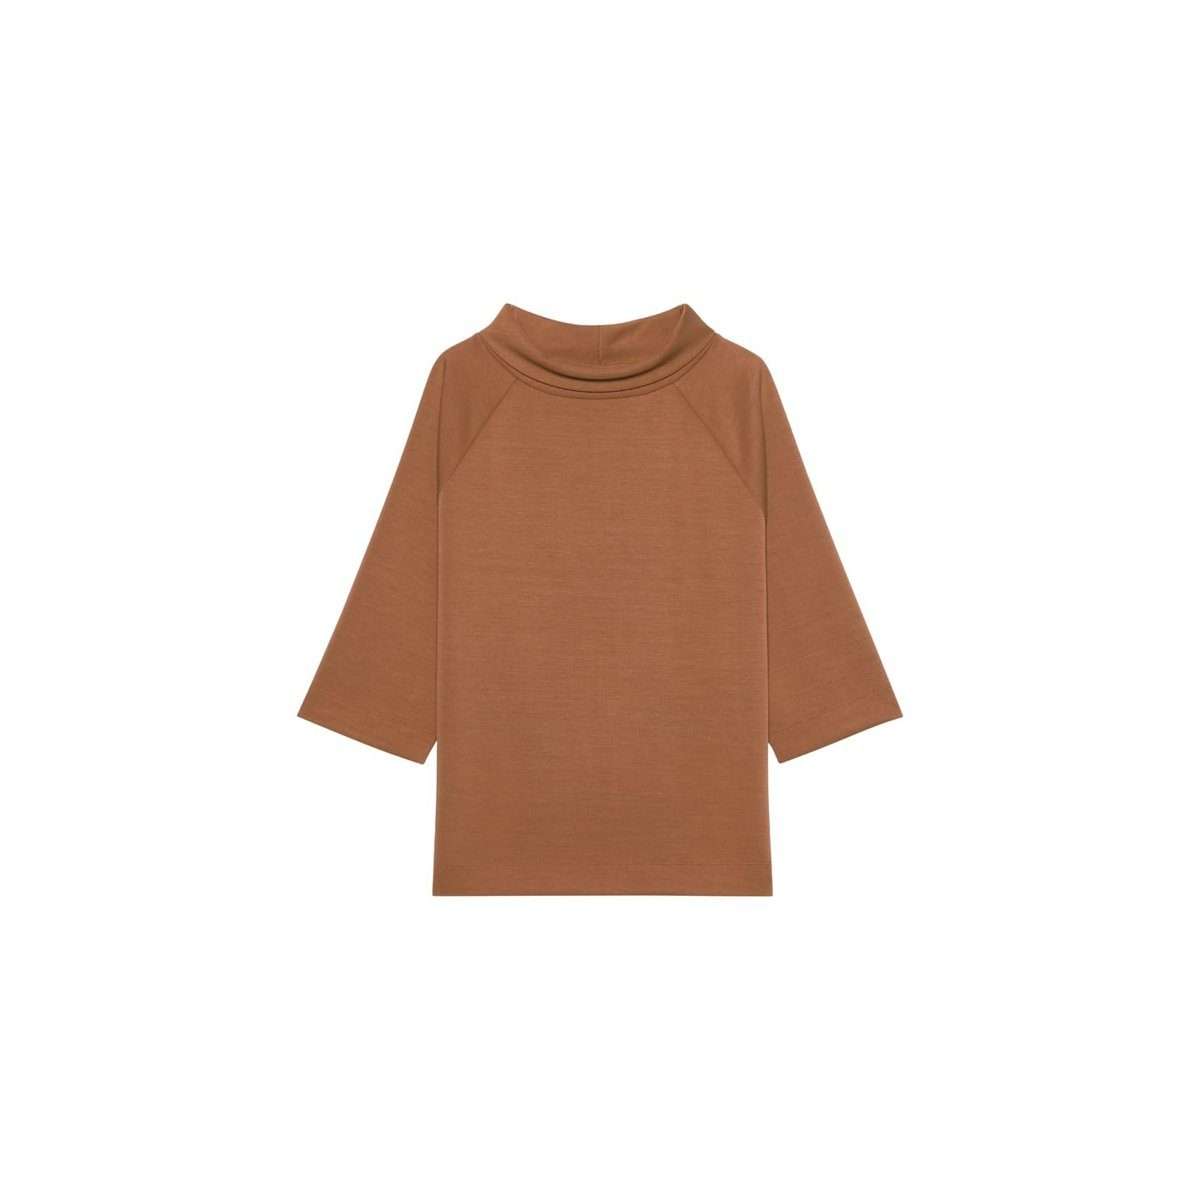 Длинный свитер коричневого цвета (1 шт.)